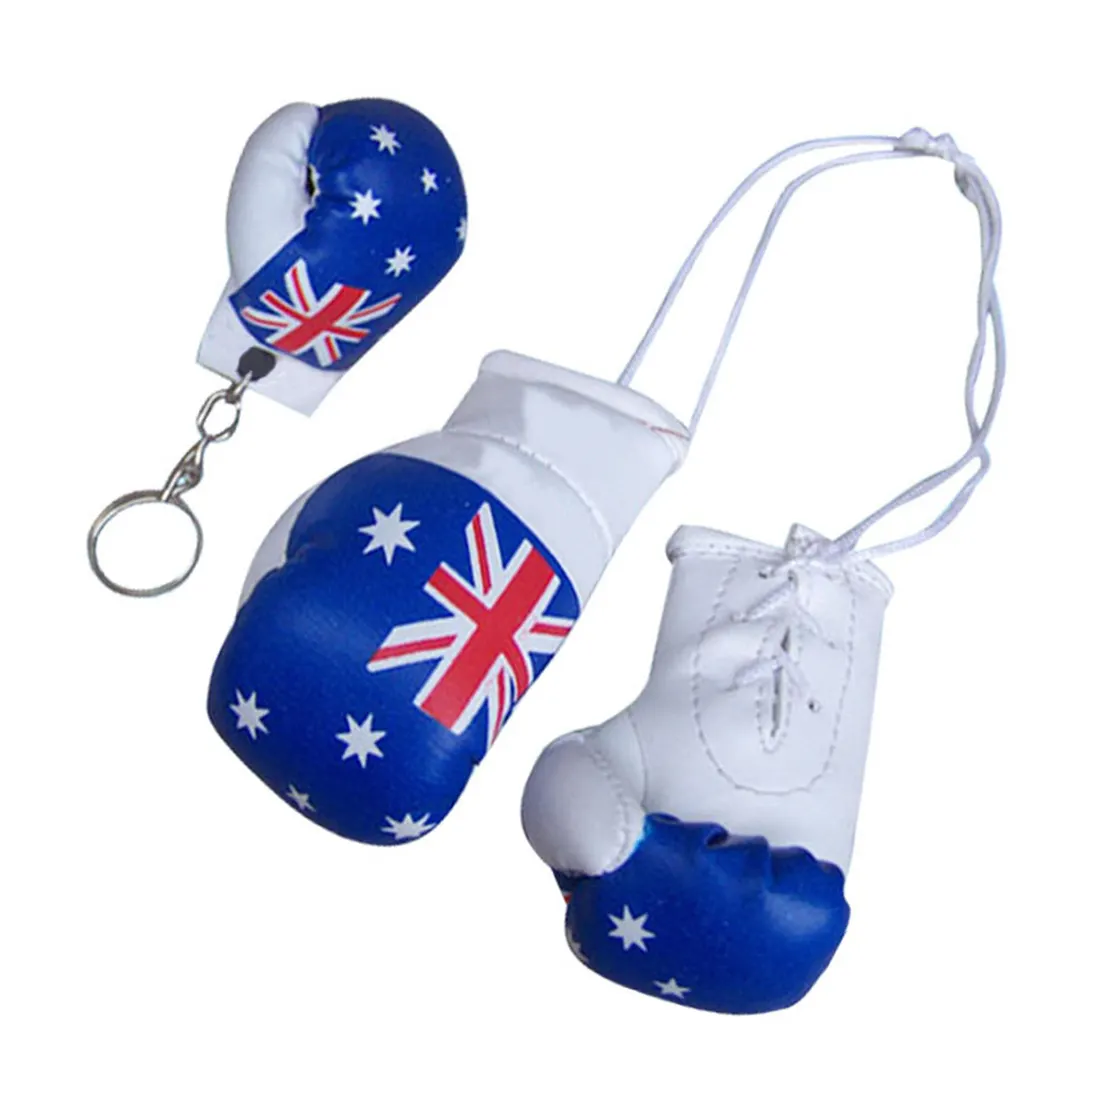 LLavero de boxeo de diseño OEM, el mejor precio, Mini guantes de boxeo personalizados, diseño de Mini guantes de boxeo personalizados, llavero con embalaje personalizado